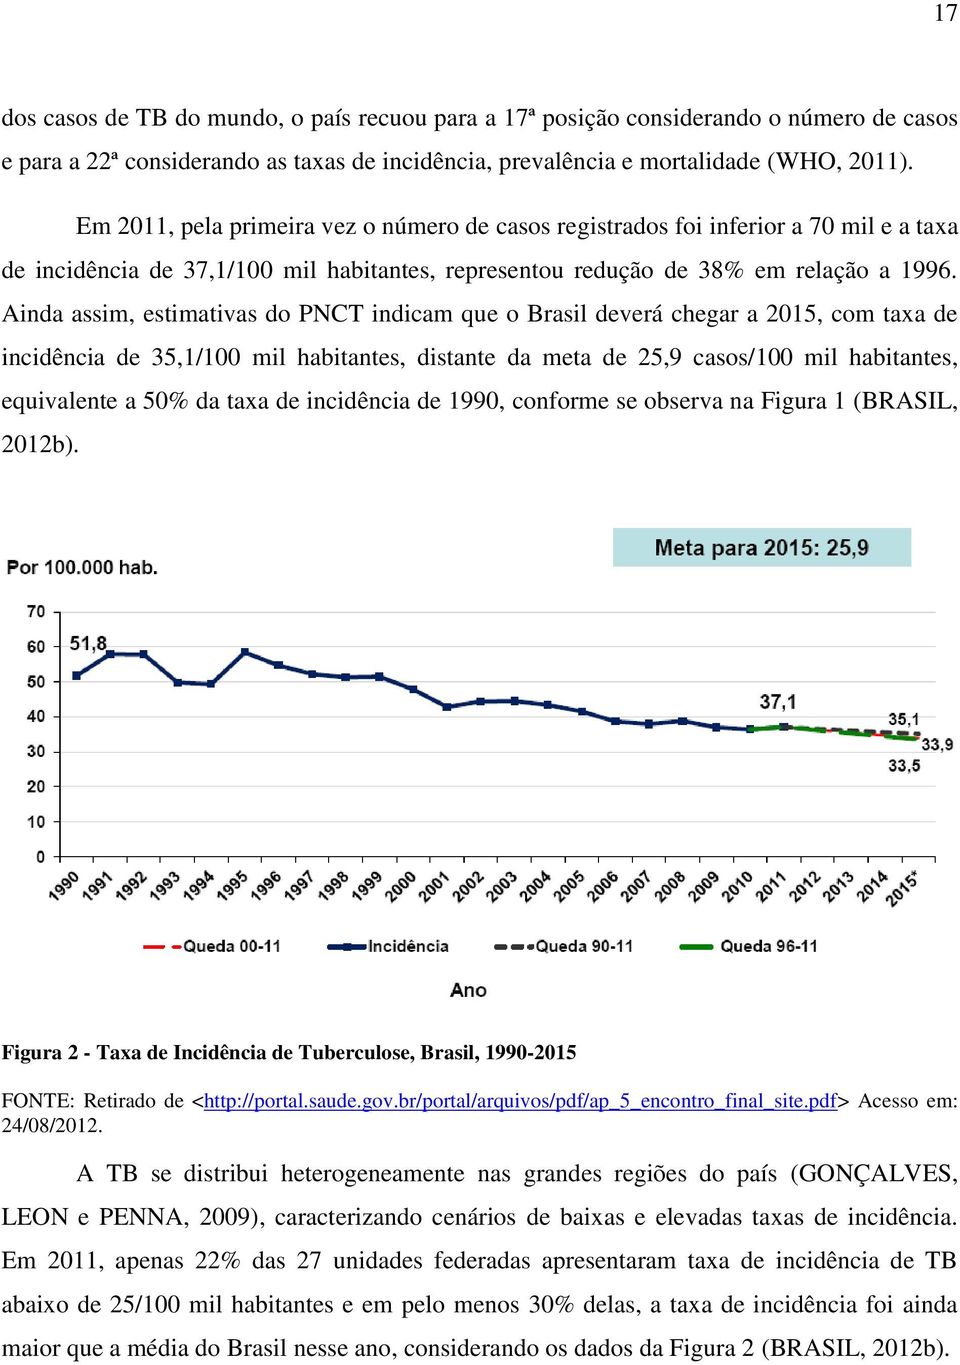 Ainda assim, estimativas do PNCT indicam que o Brasil deverá chegar a 2015, com taxa de incidência de 35,1/100 mil habitantes, distante da meta de 25,9 casos/100 mil habitantes, equivalente a 50% da